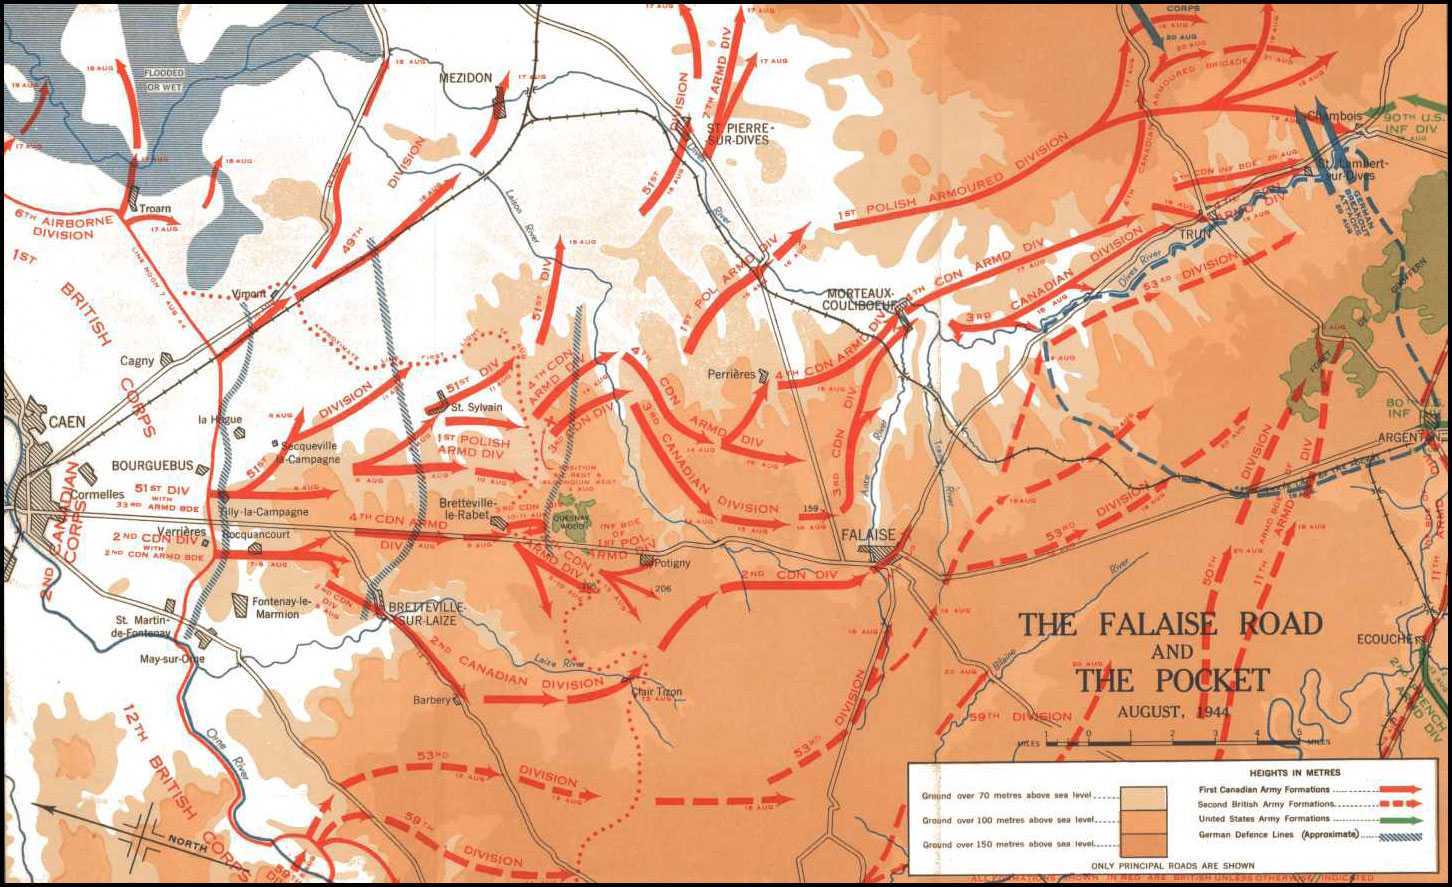 A colour map showing the infamous Falaise Gap.